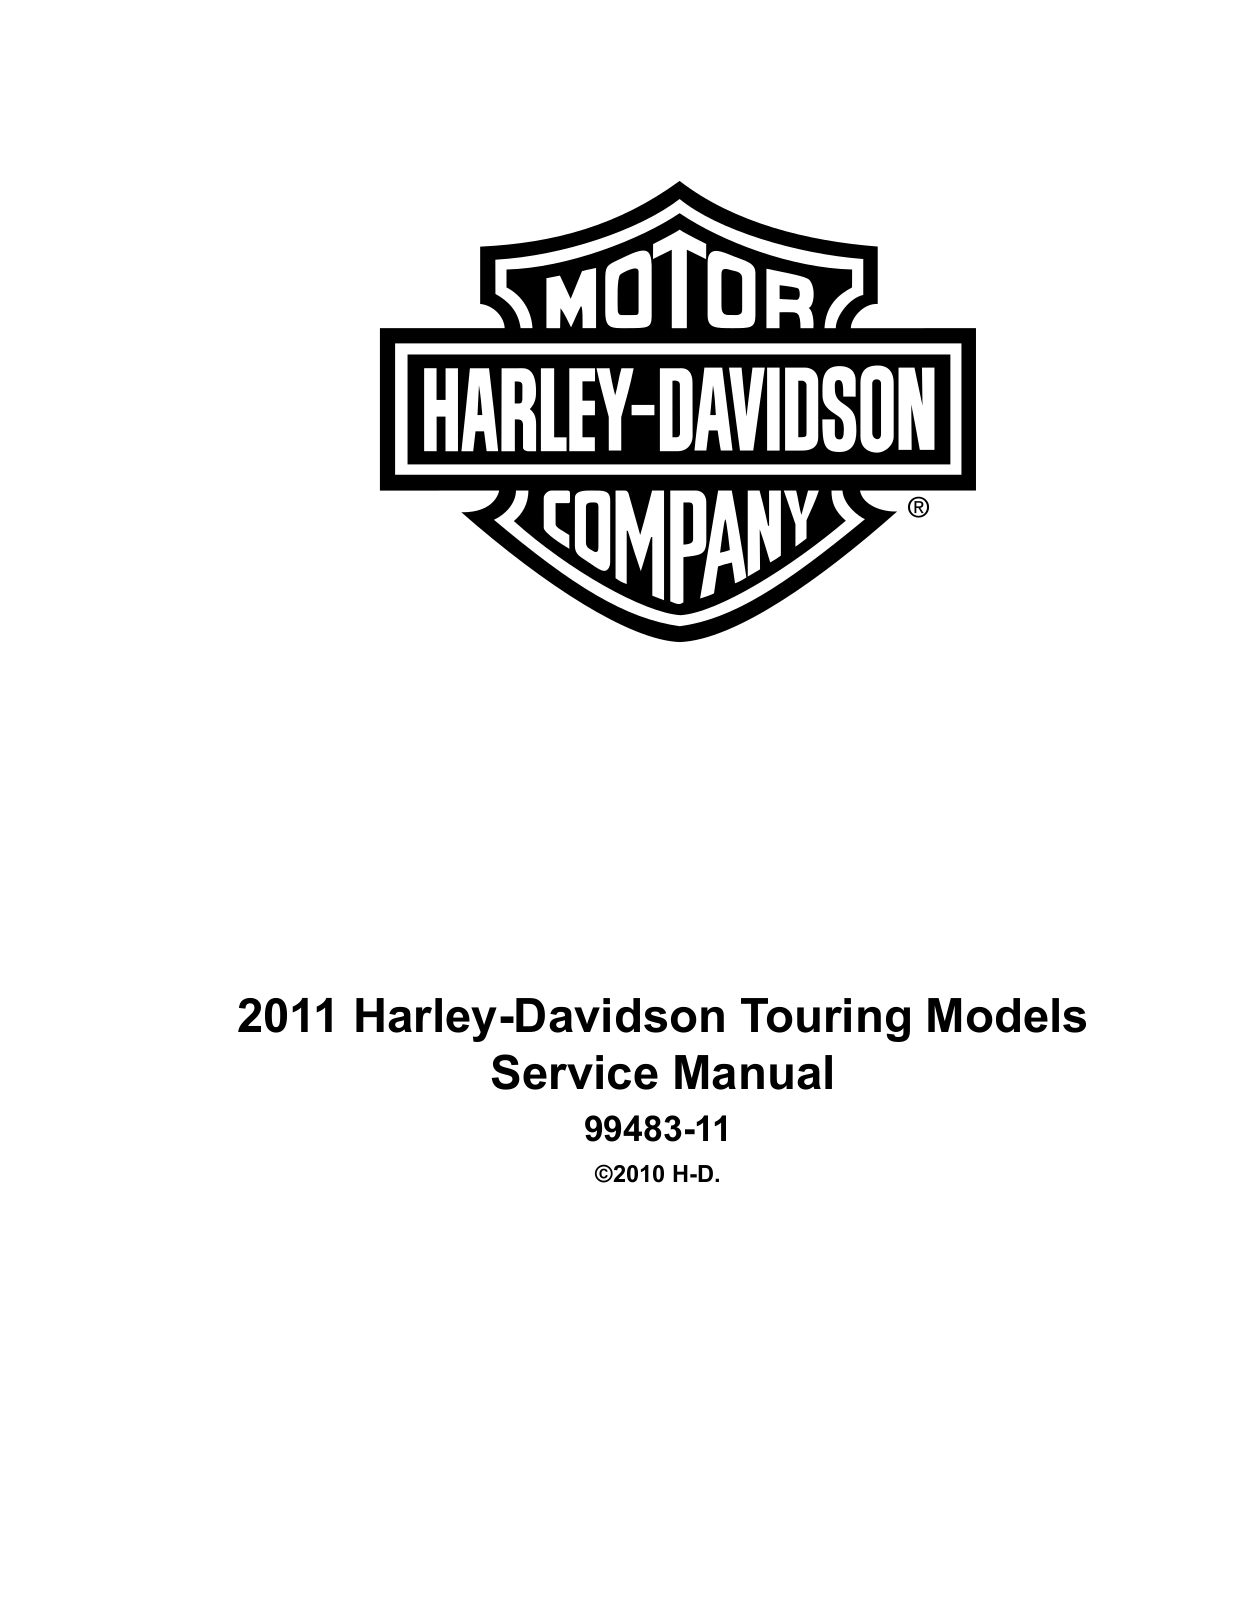 Harley-Davidson Touring 2011 Service Manual